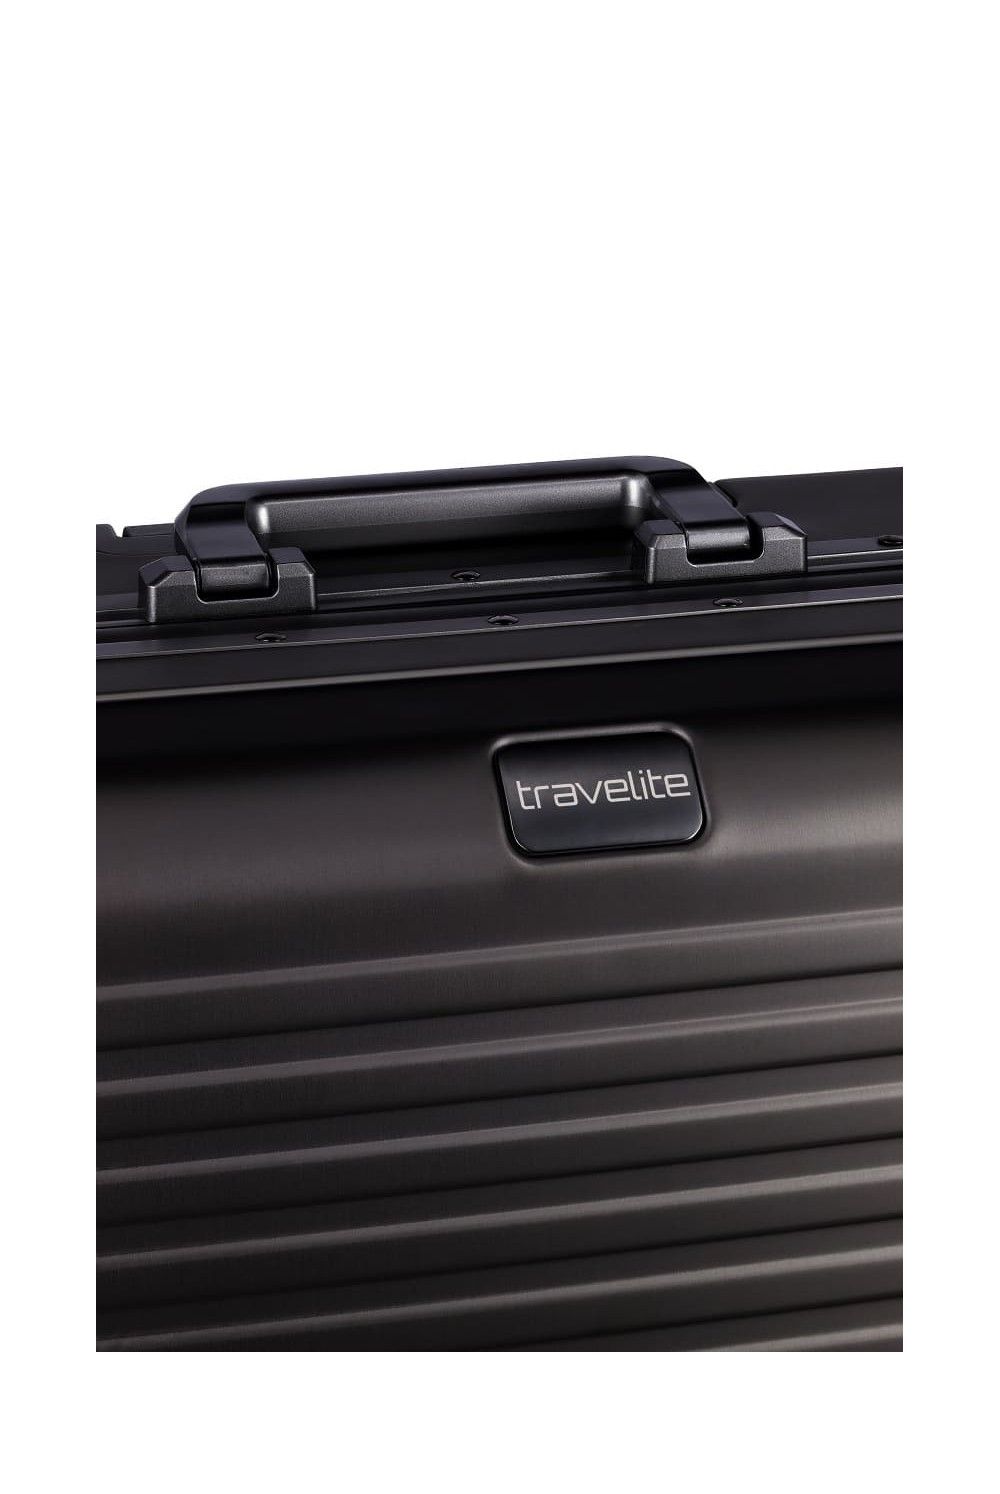 Aluminium Koffer Travelite NEXT 55 4 Rad Handgepäck schwarz